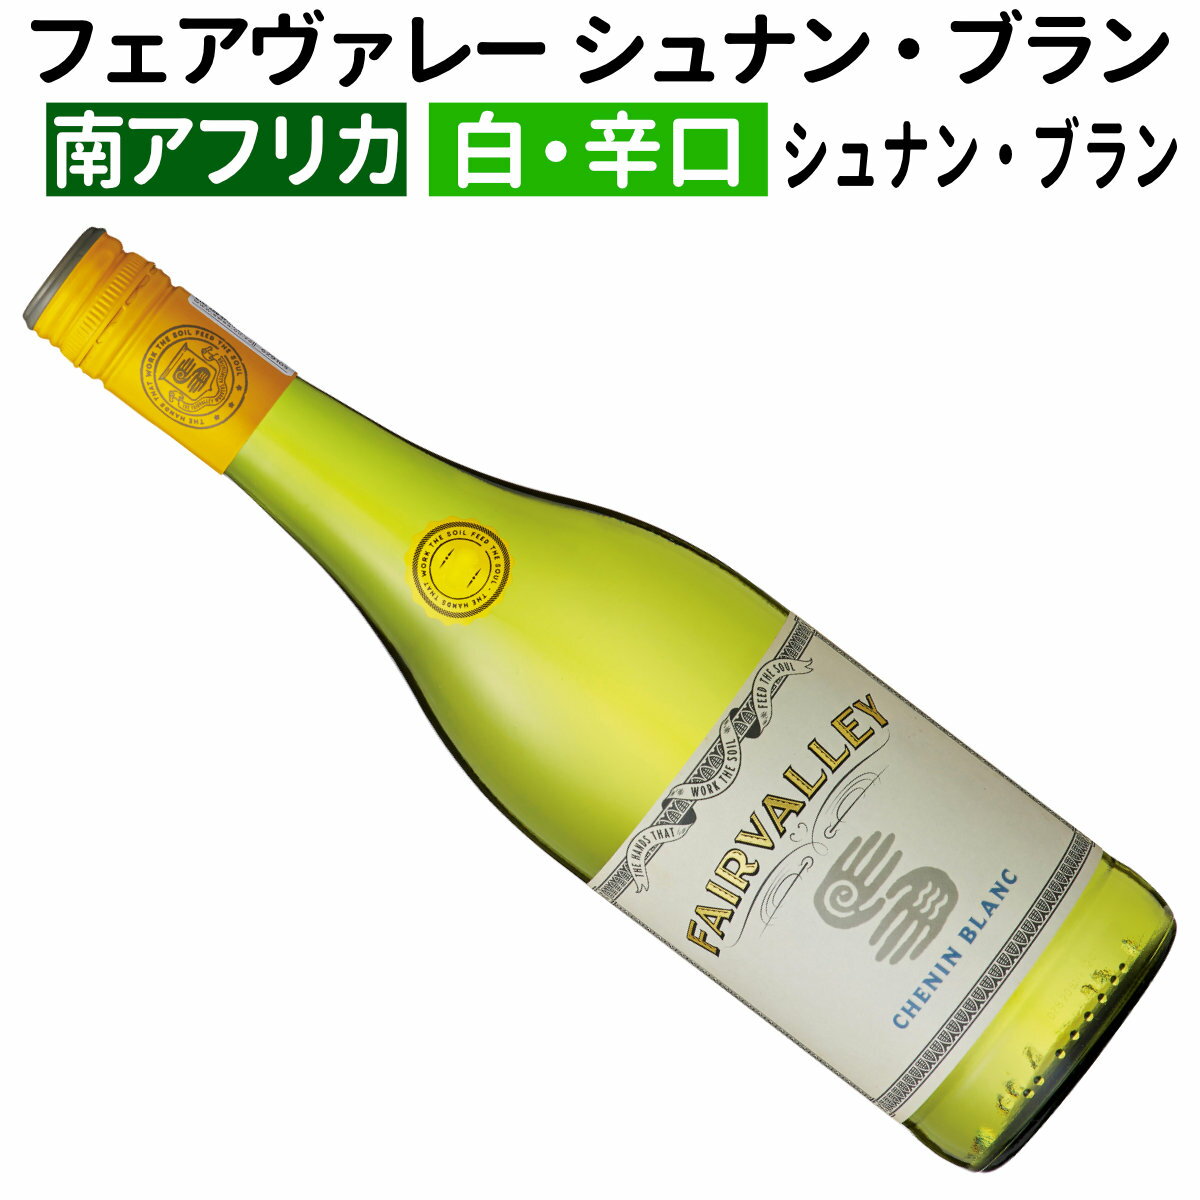 【南アフリカワイン】【白ワイン】